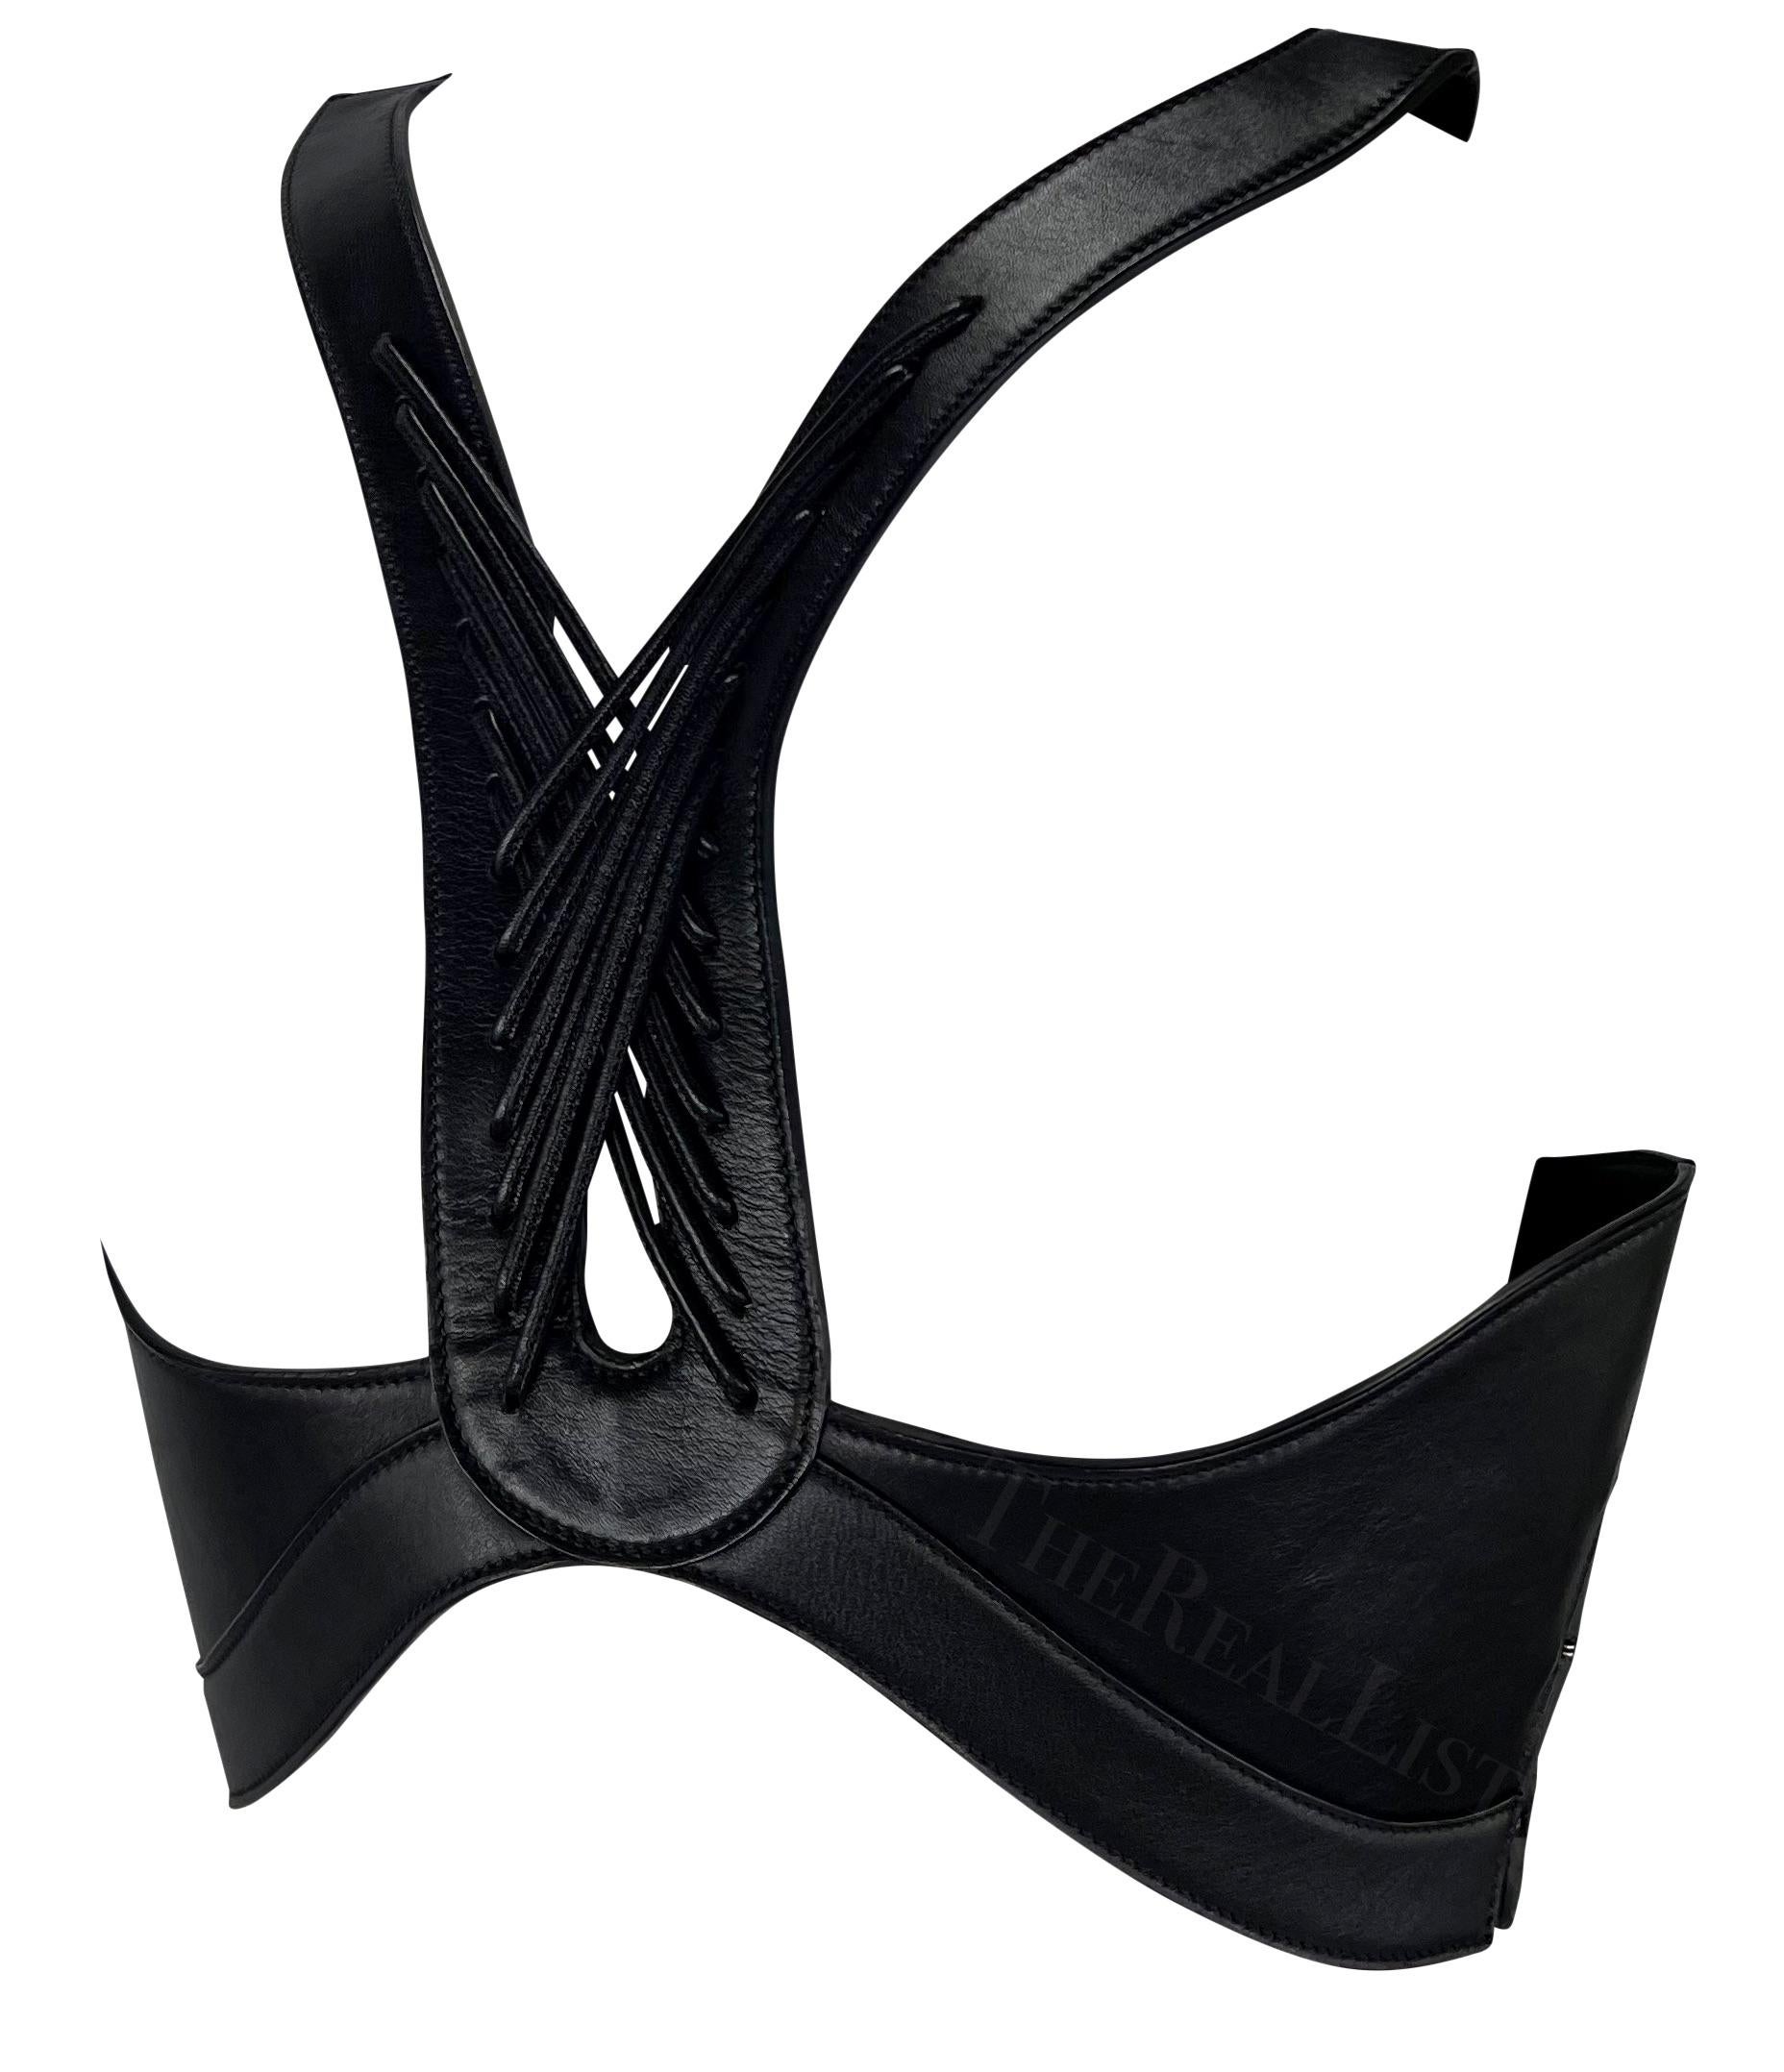 Voici un incroyable harnais en cuir noir Alexander McQueen.
Entrez dans le royaume de la mode avant-gardiste avec ce captivant top à harnais en cuir des années 2000. Méticuleusement fabriquée, cette pièce extraordinaire met en valeur l'allure du